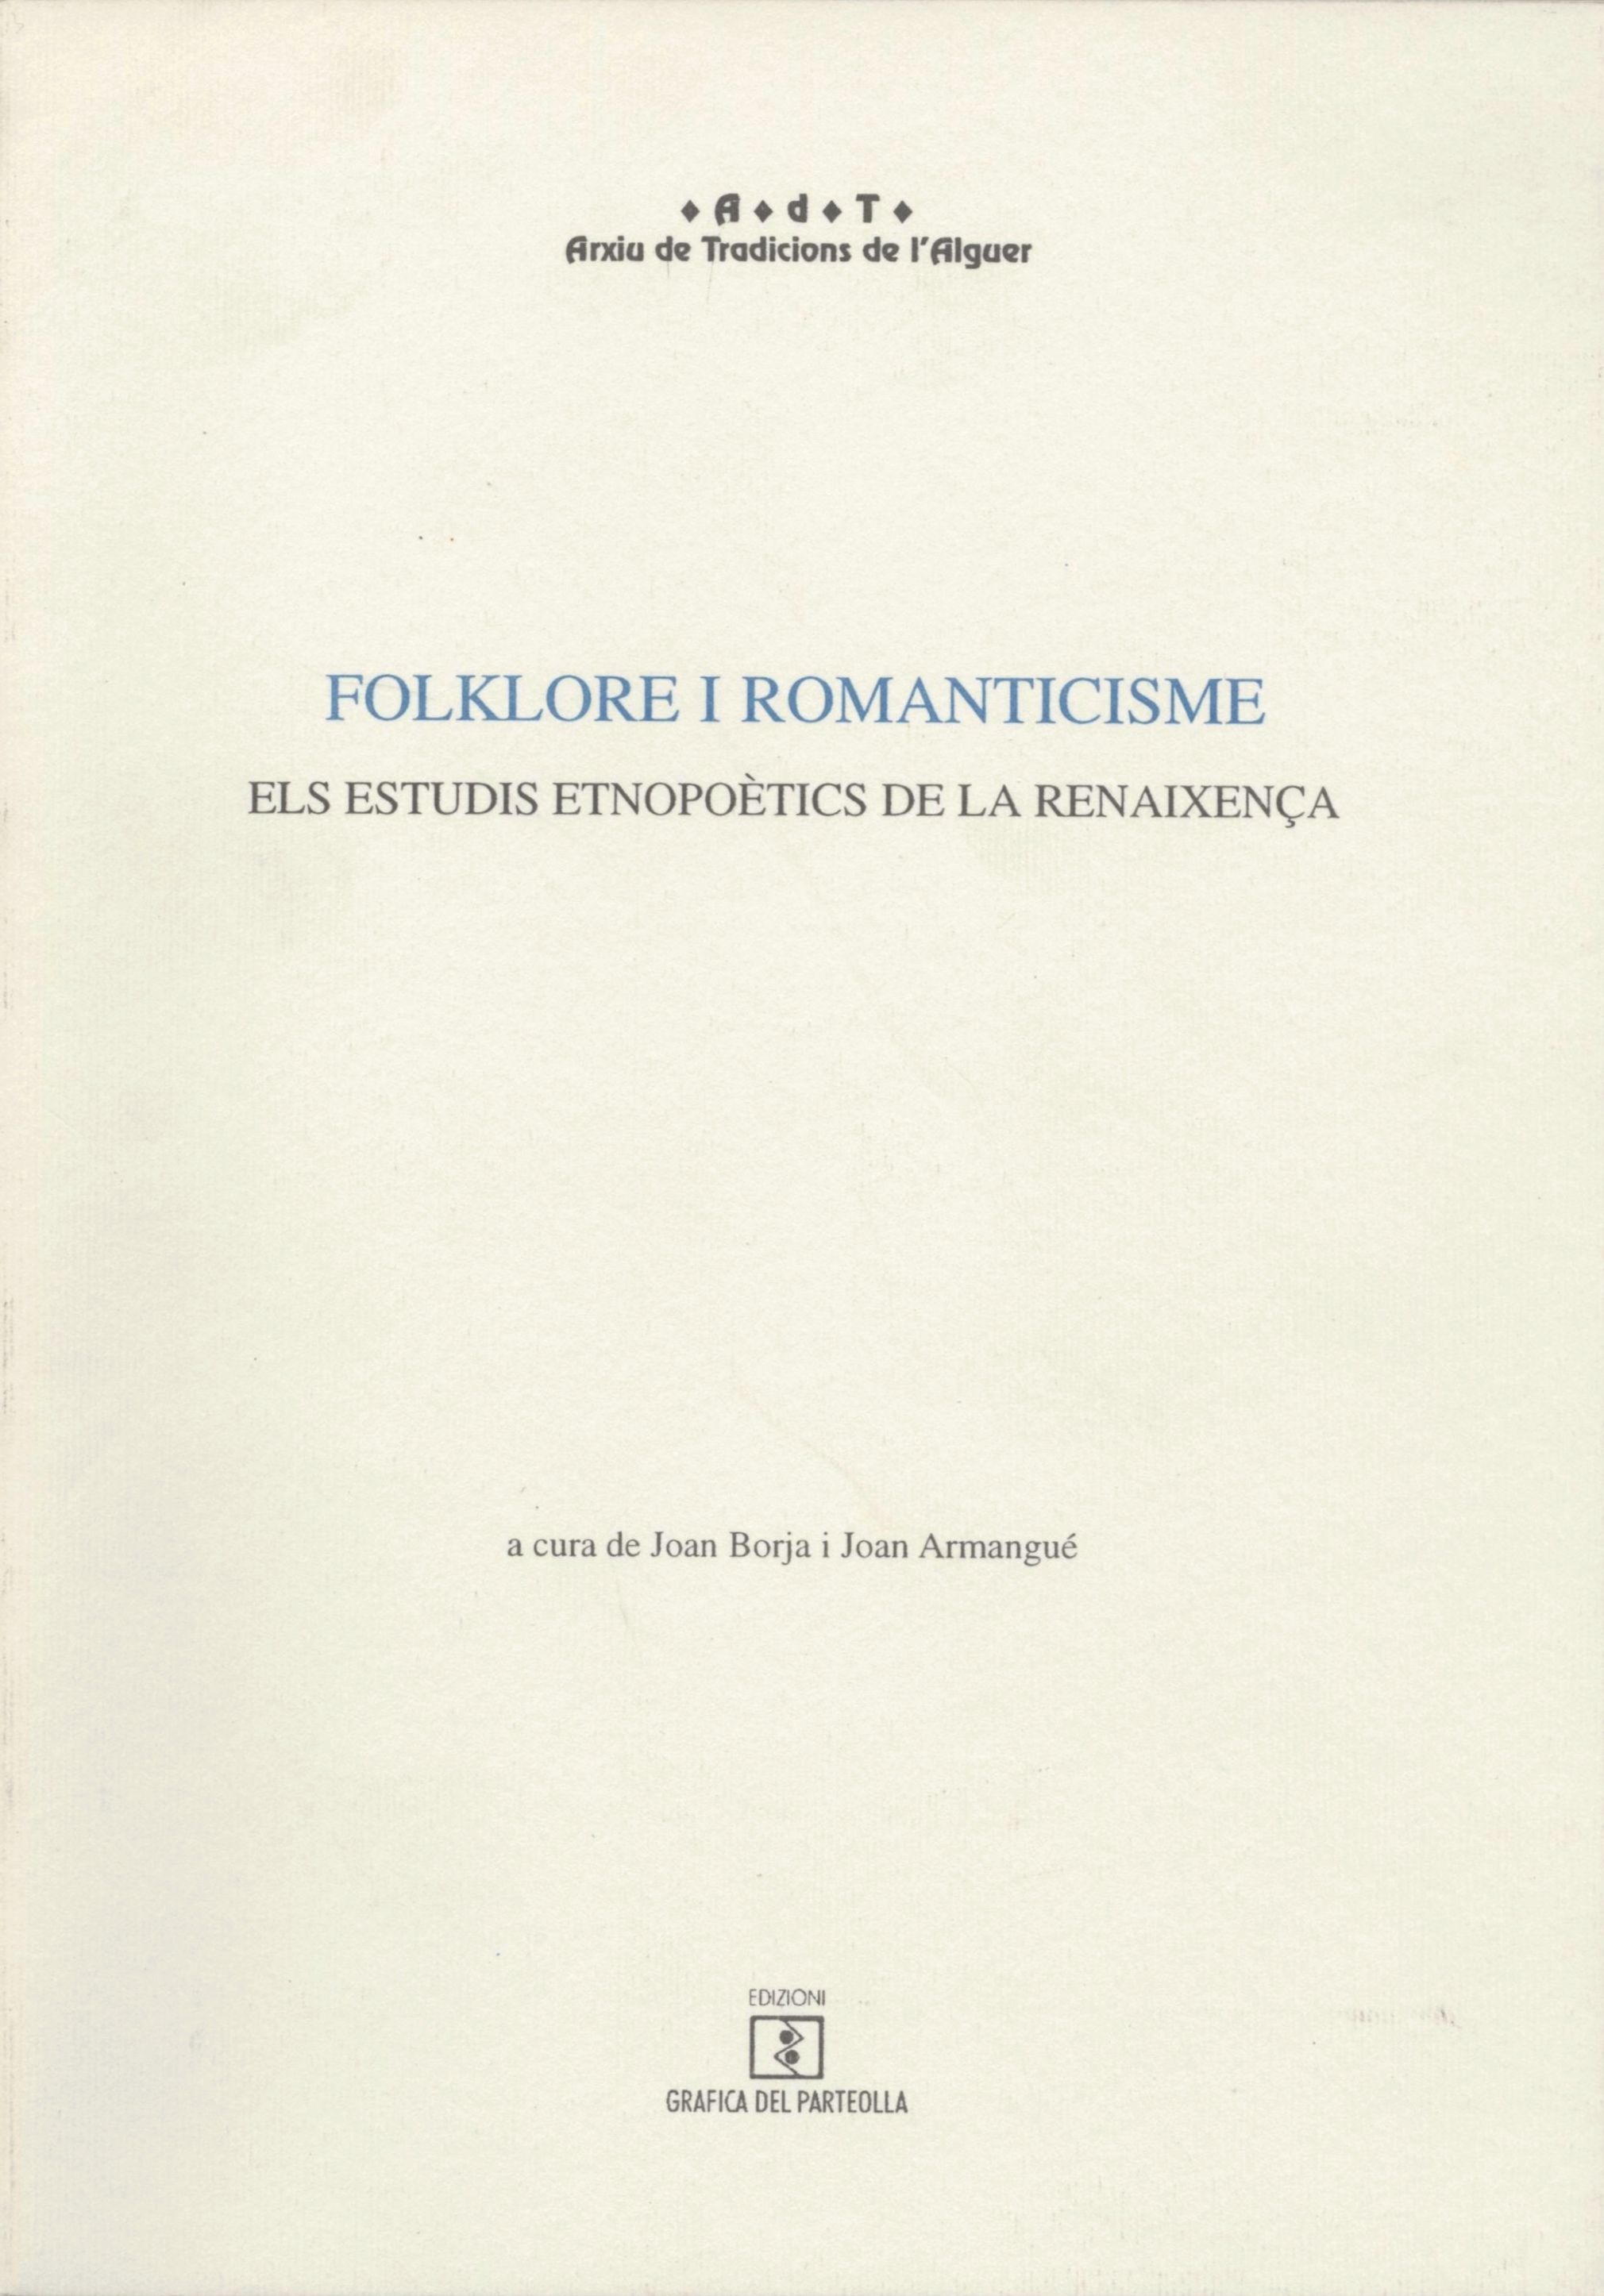 Imagen de portada del libro Folklore i romanticisme